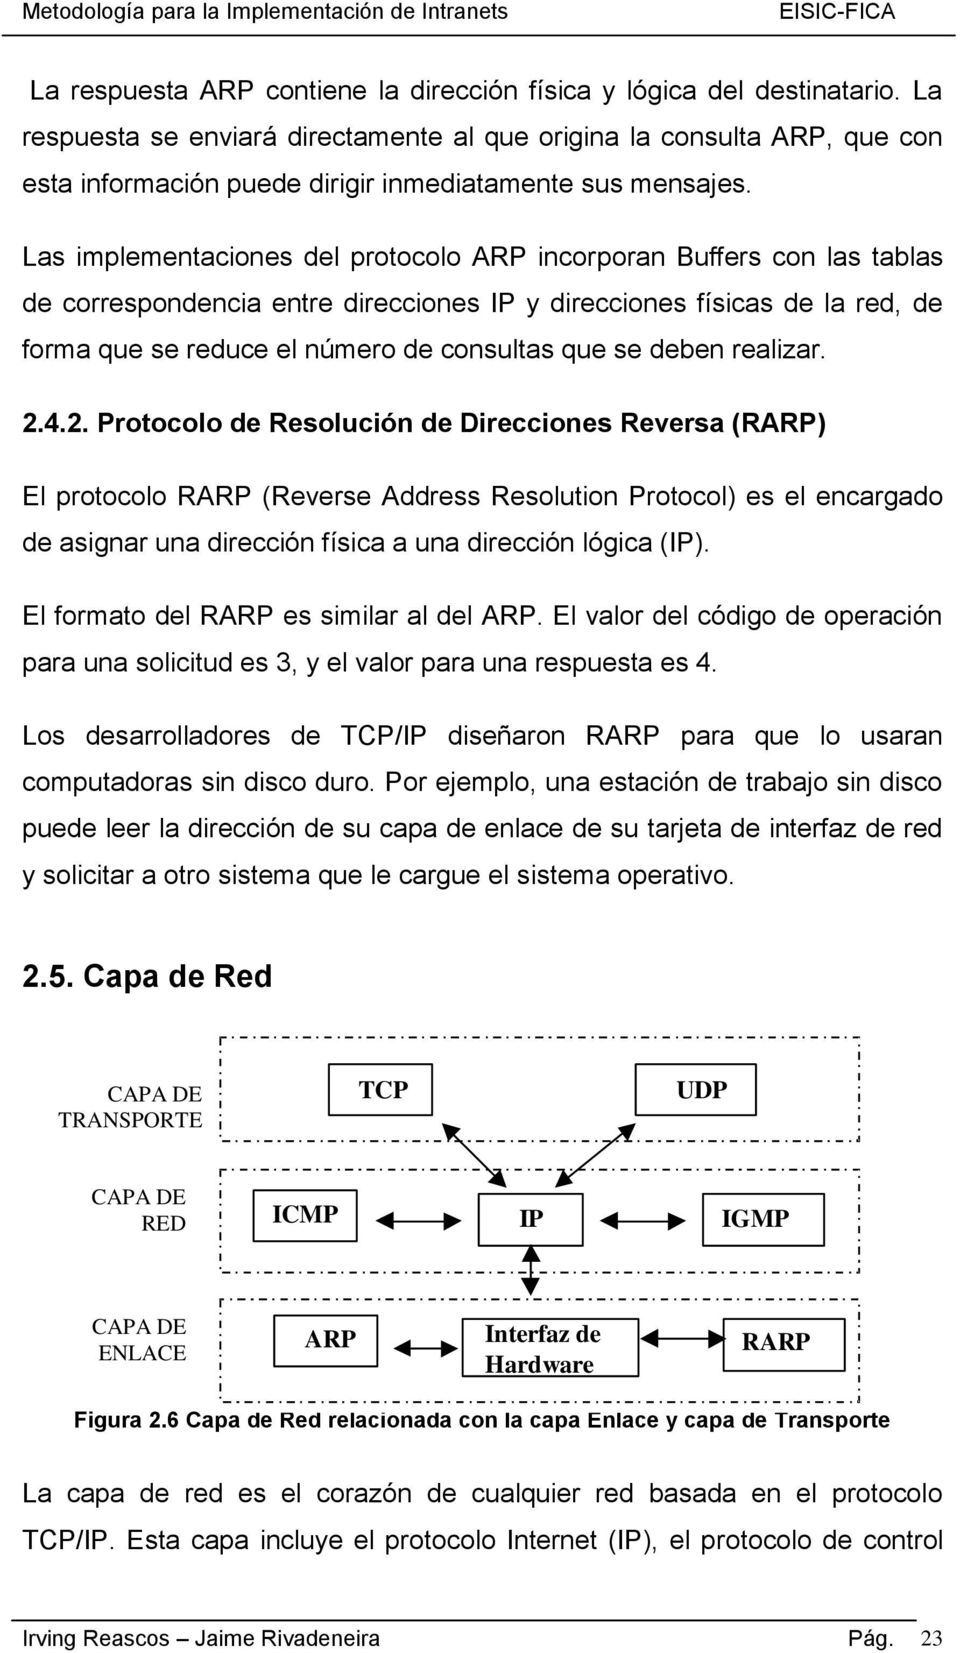 Las implementaciones del protocolo ARP incorporan Buffers con las tablas de correspondencia entre direcciones IP y direcciones físicas de la red, de forma que se reduce el número de consultas que se